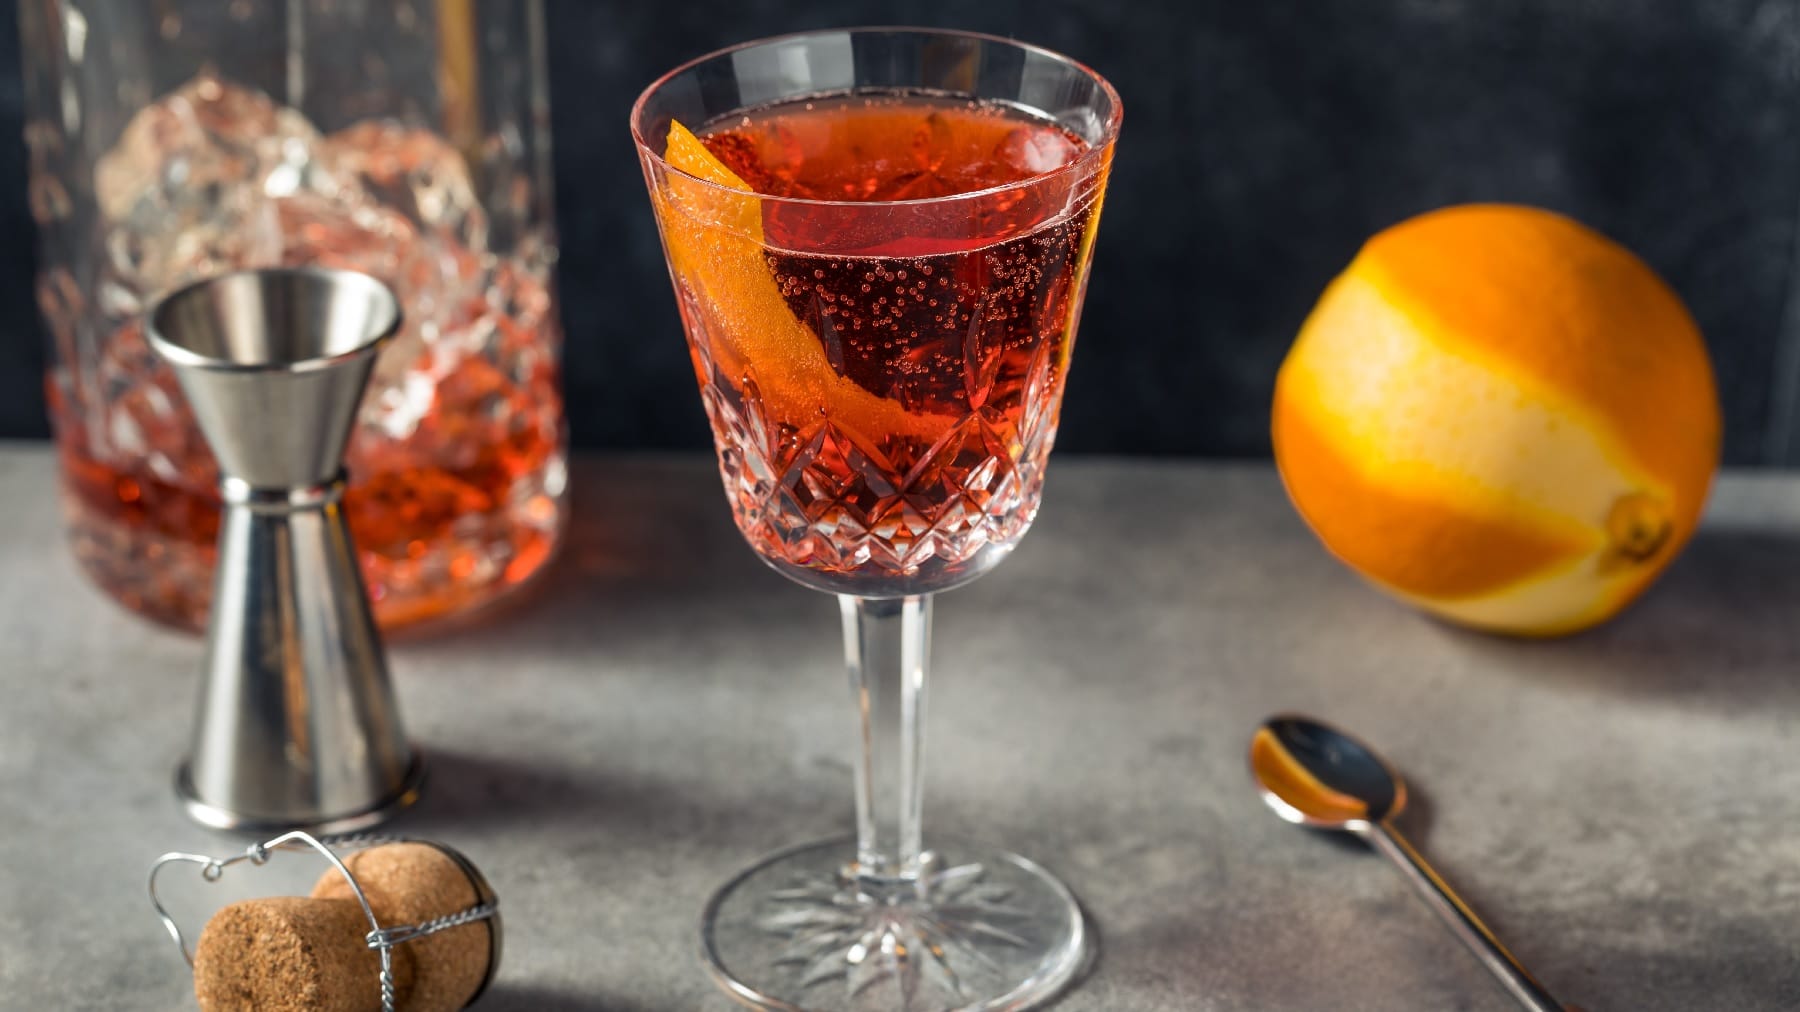 Ein Glas mit dem Negroni Sbagliato auf grauem Untergund mit einer angeschälten orange und einem Jigger.